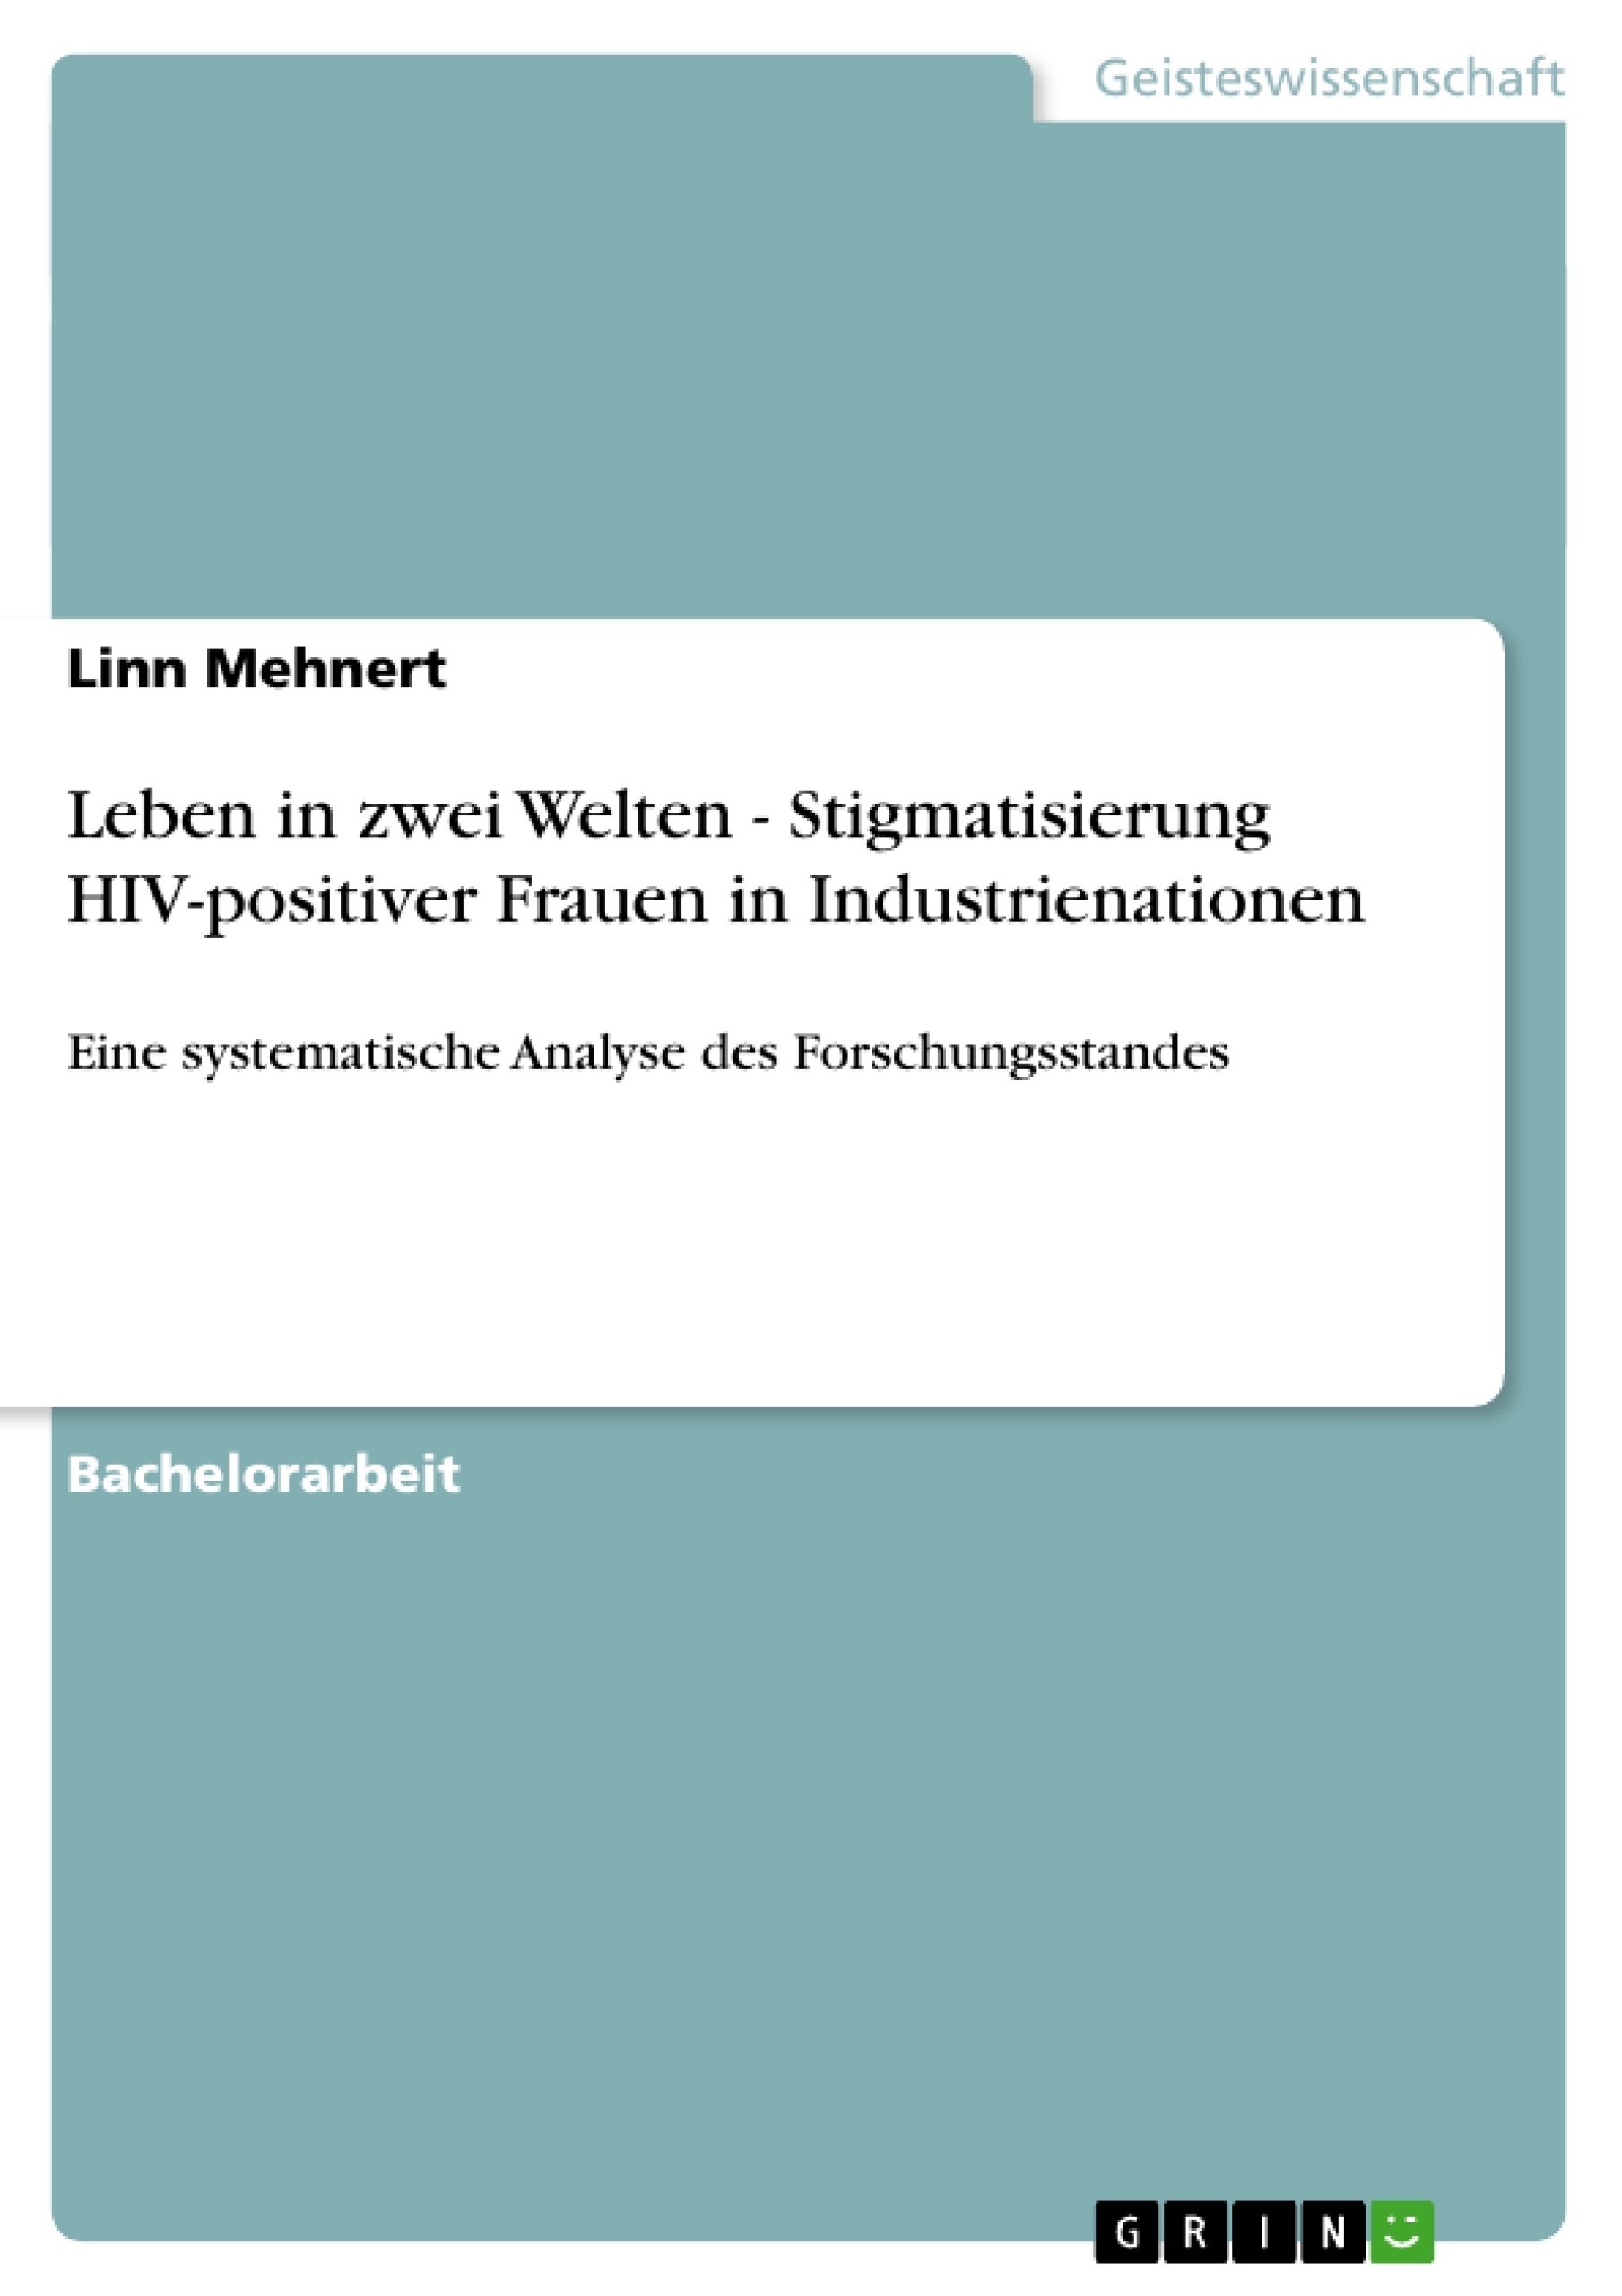 Titel: Leben in zwei Welten. Stigmatisierung HIV-positiver Frauen in Industrienationen